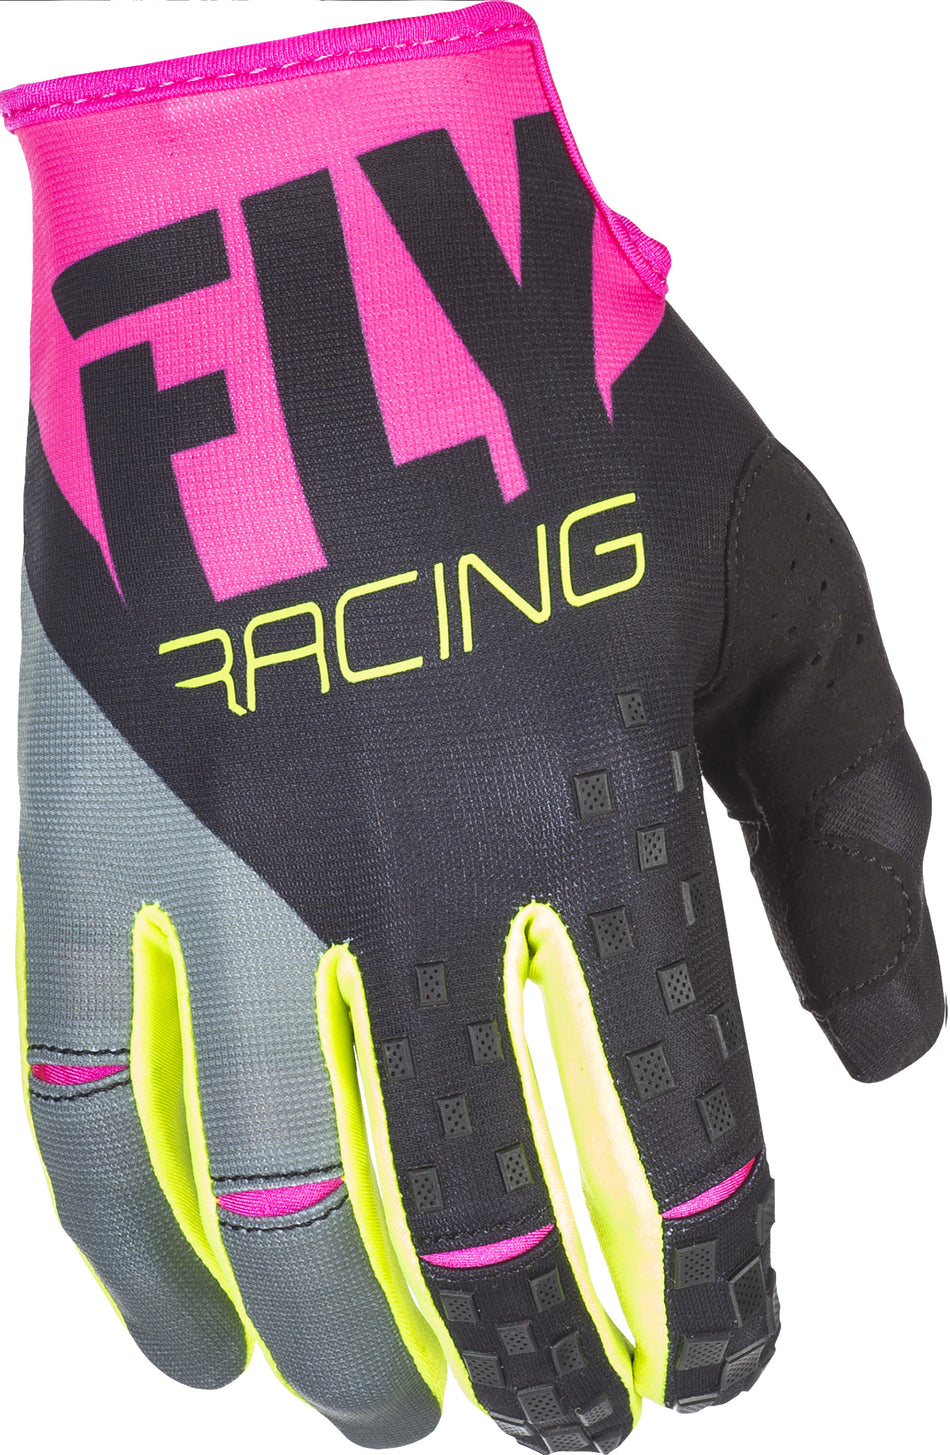 FLY RACING Kinetic Gloves Neon Pink/Black/Hi-Vis Sz 12 371-41912